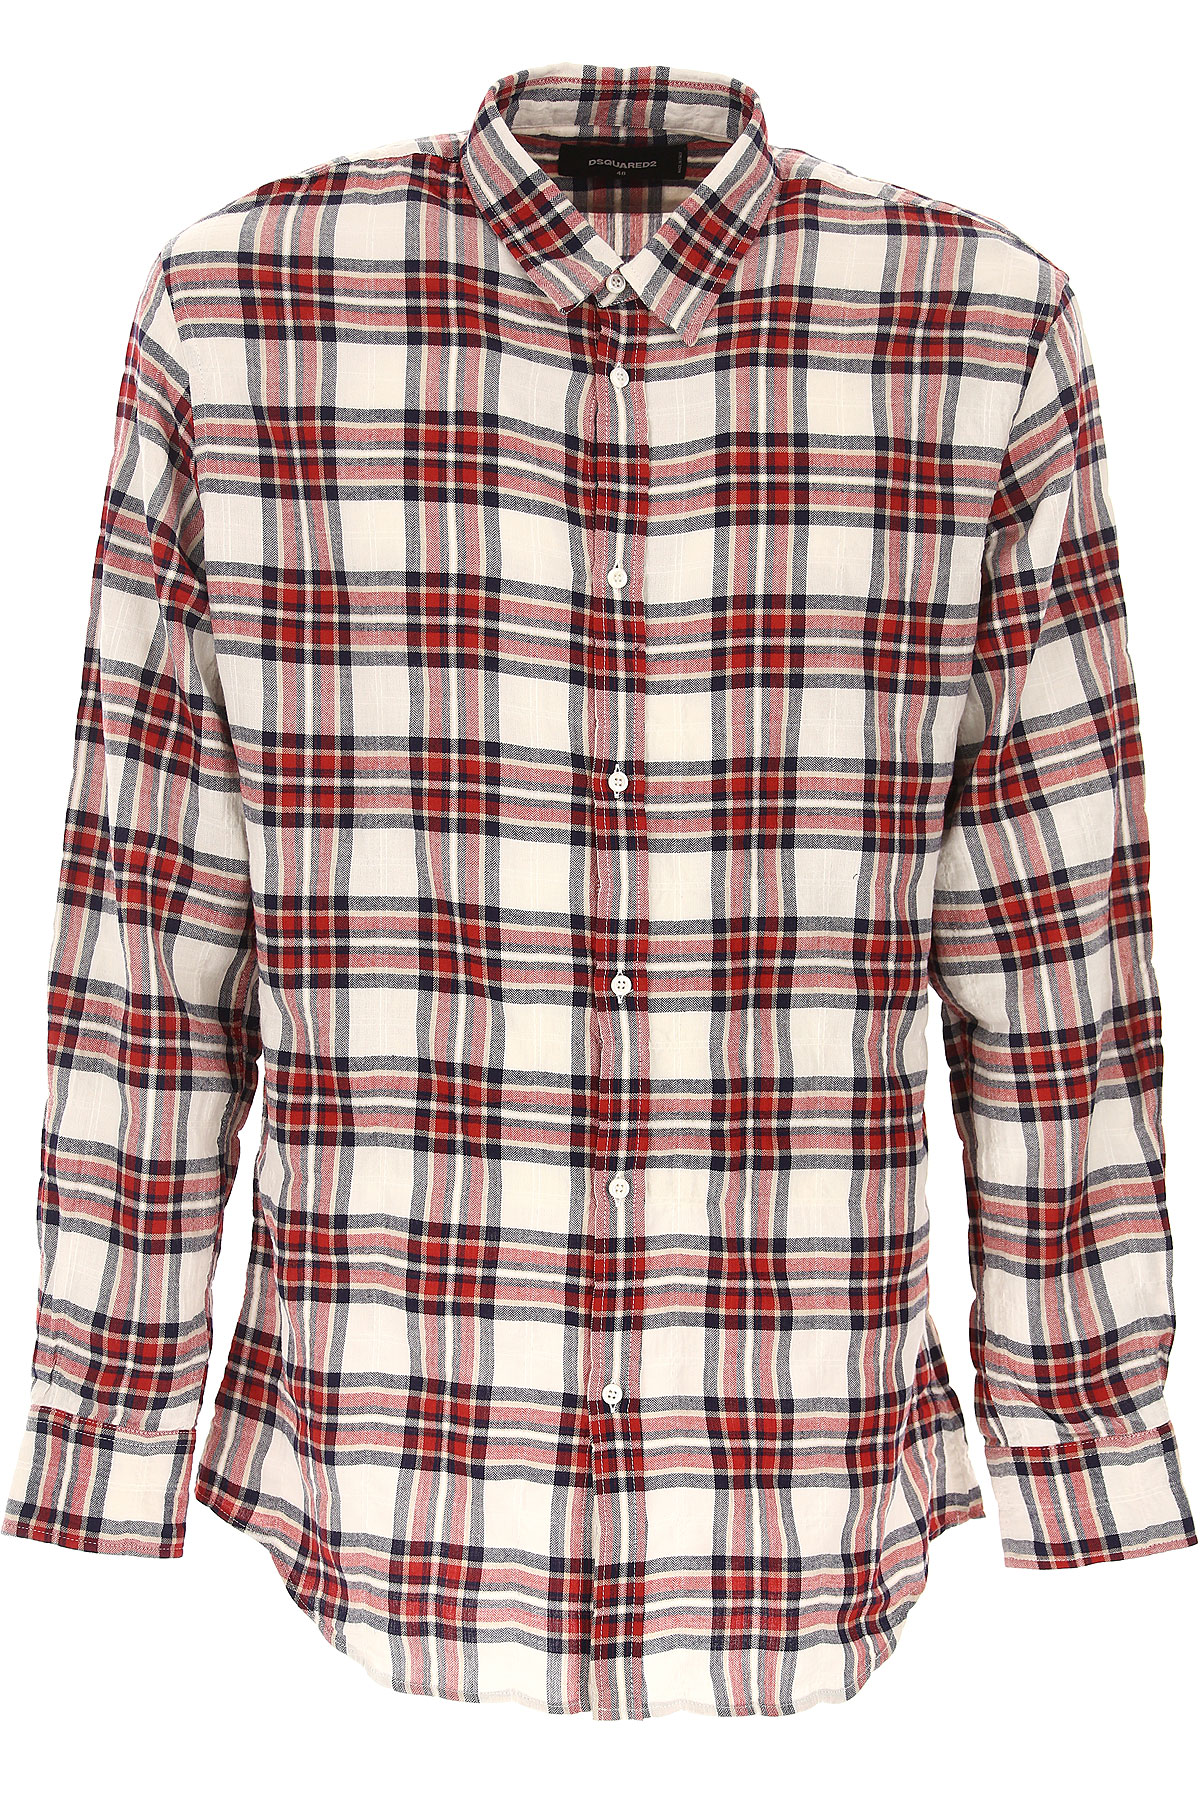 Dsquared Hemde für Herren, Oberhemd Günstig im Outlet Sale, Rot, Baumwolle, 2017, L S